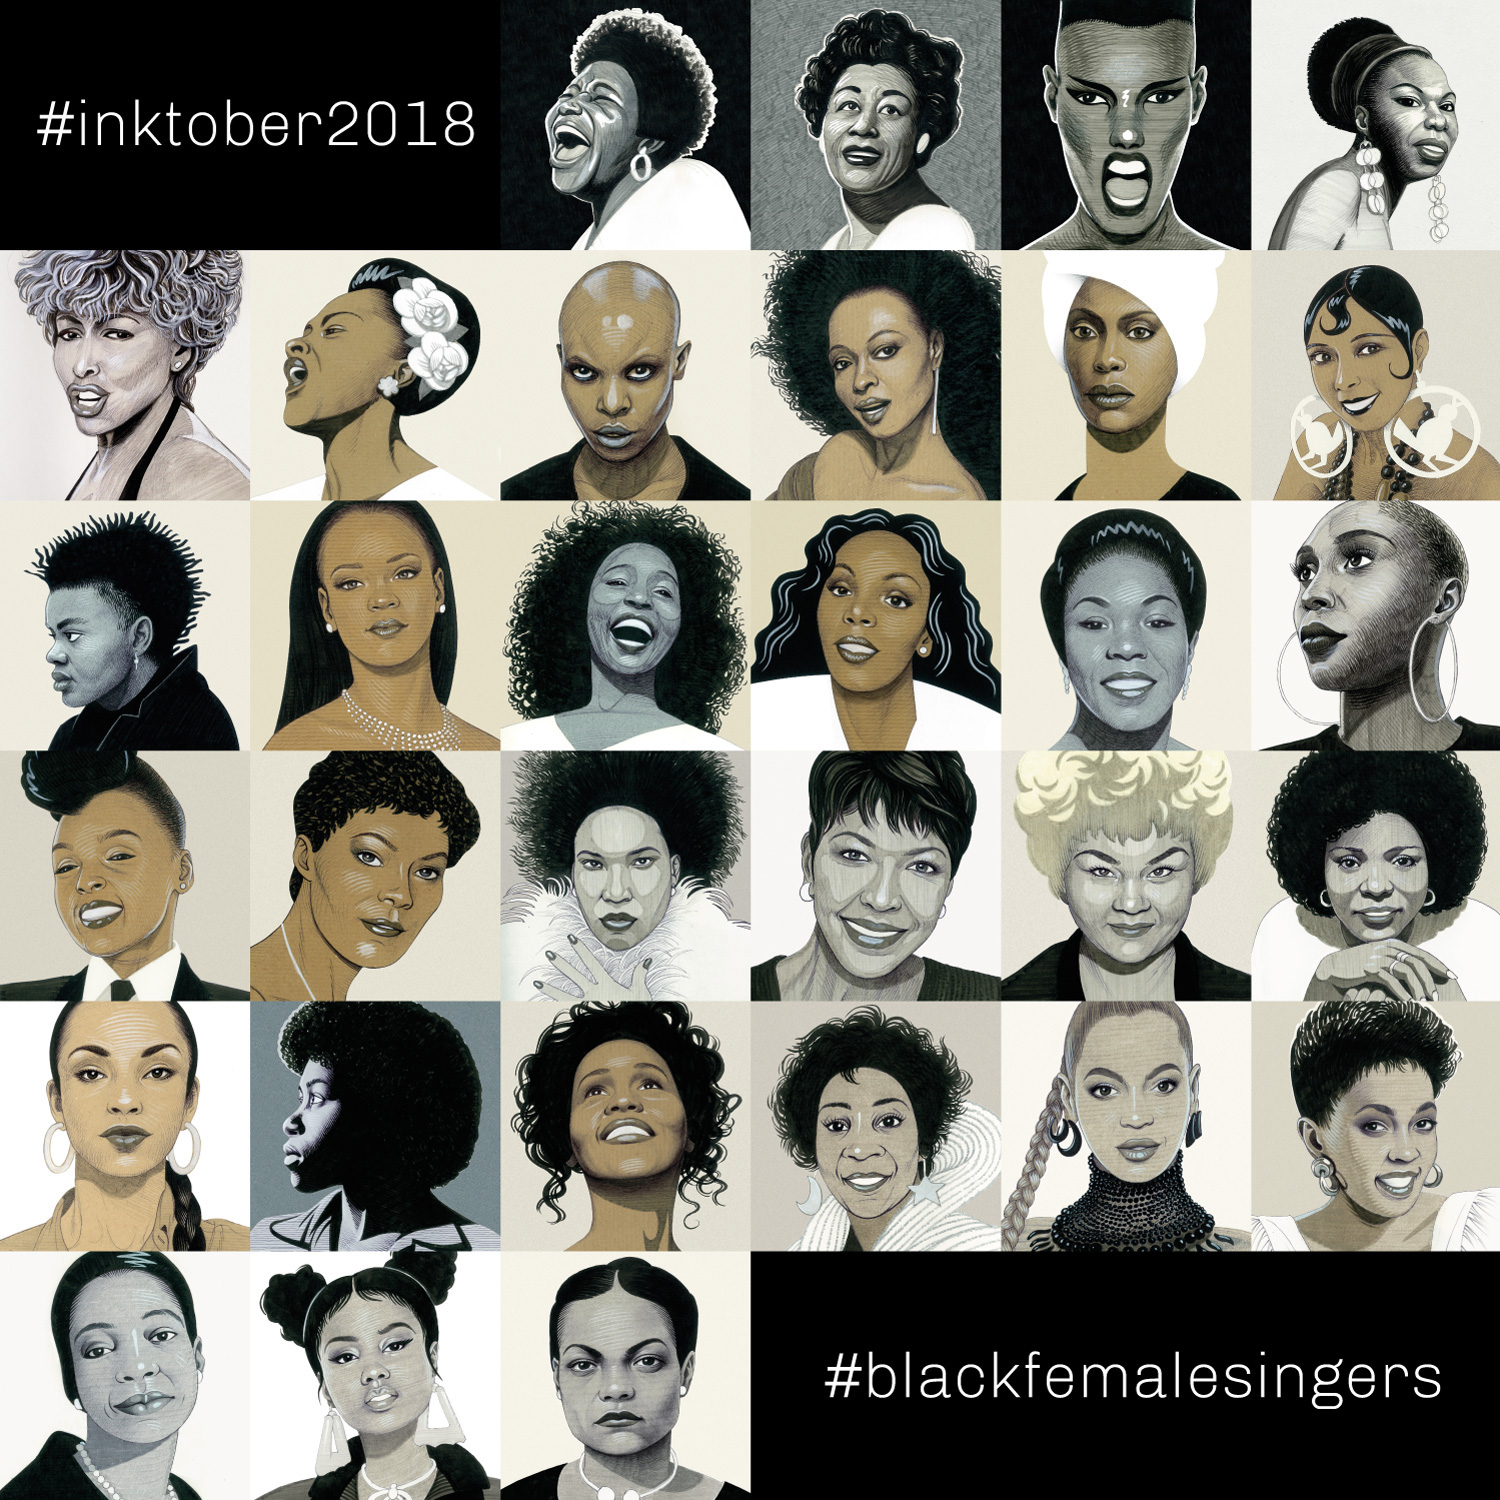 inktober 2018: black female singers